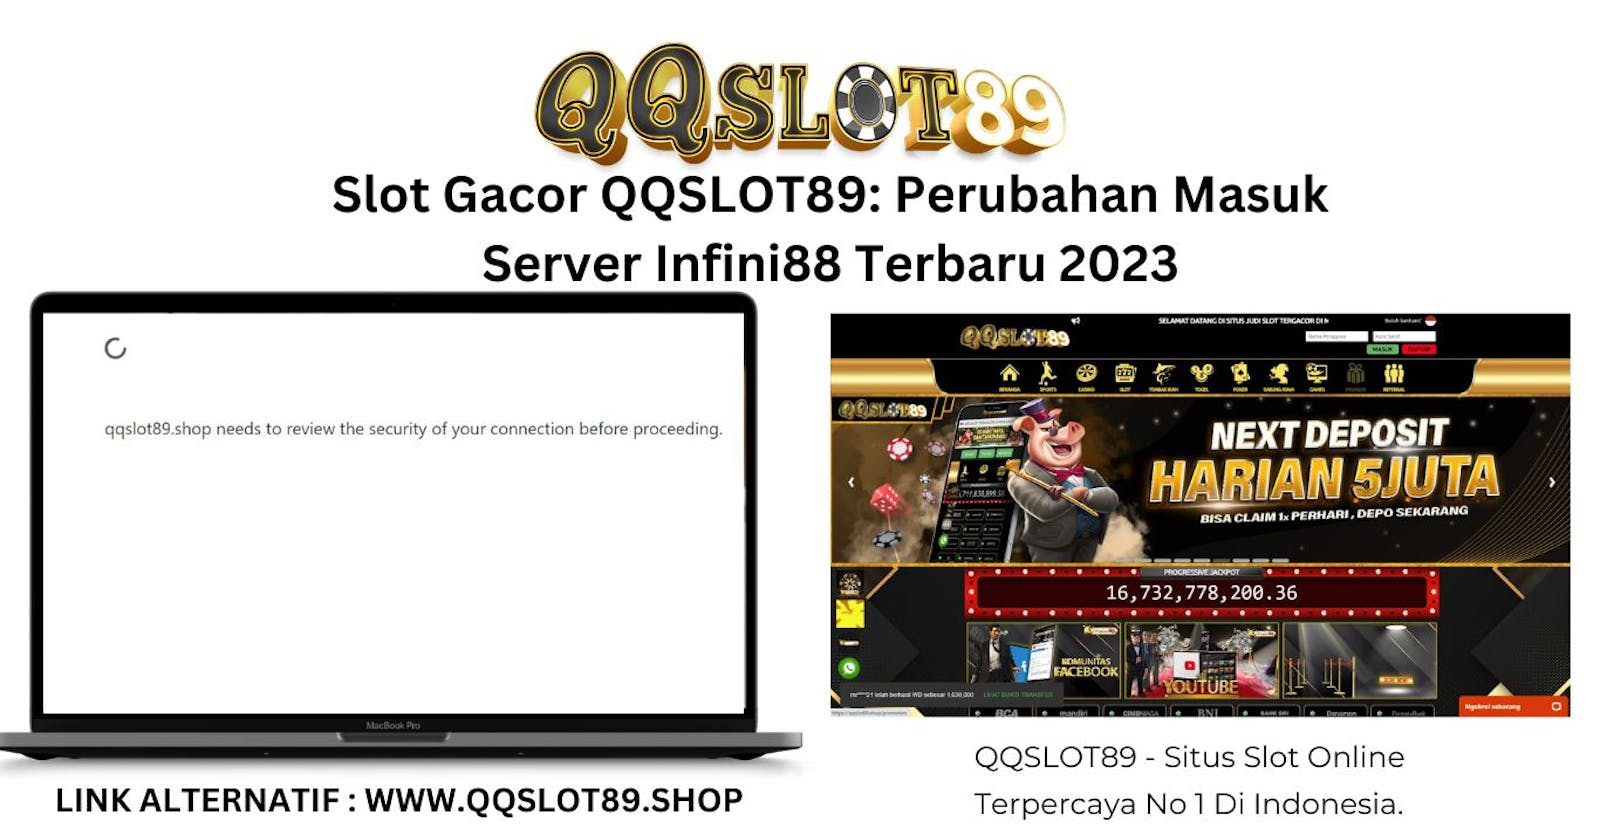 Slot Gacor QQSLOT89: Perubahan Masuk Server Infini88 Terbaru 2023